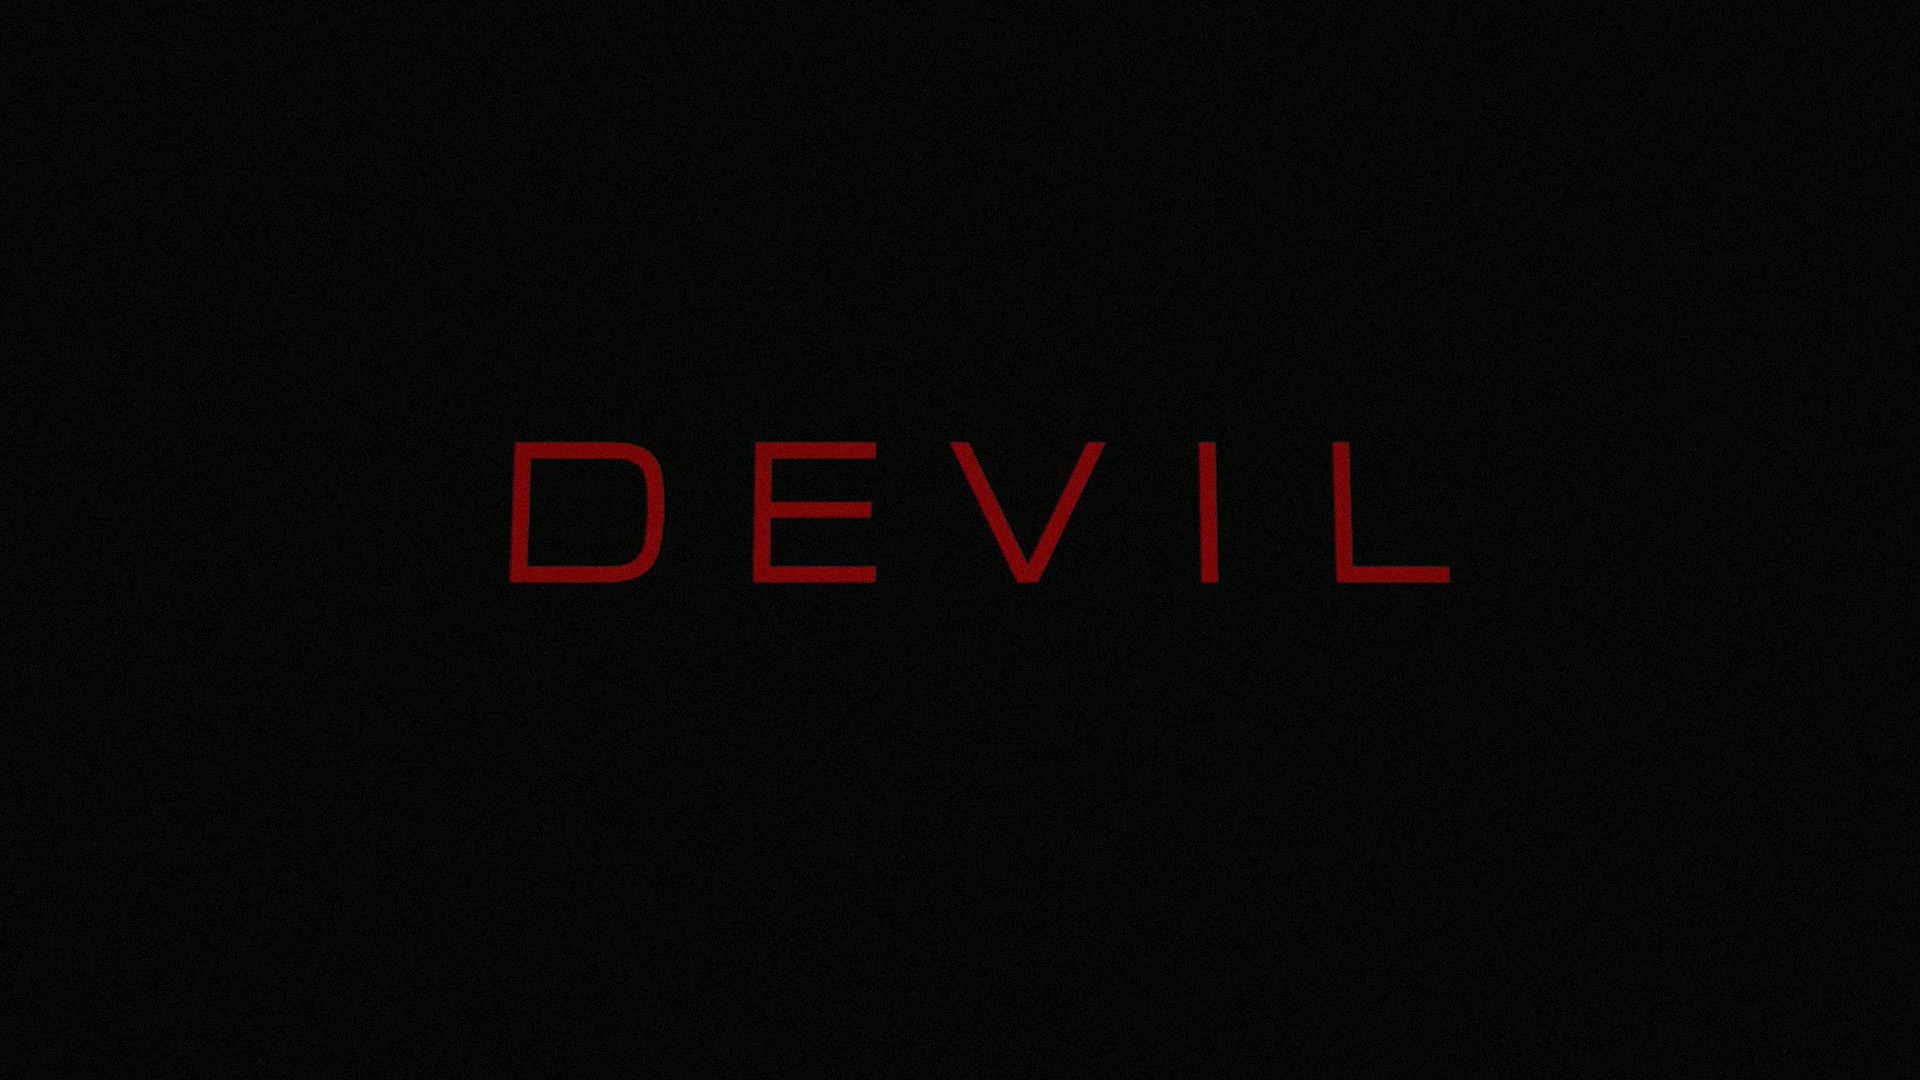 Devil Wallpaper For Desktop